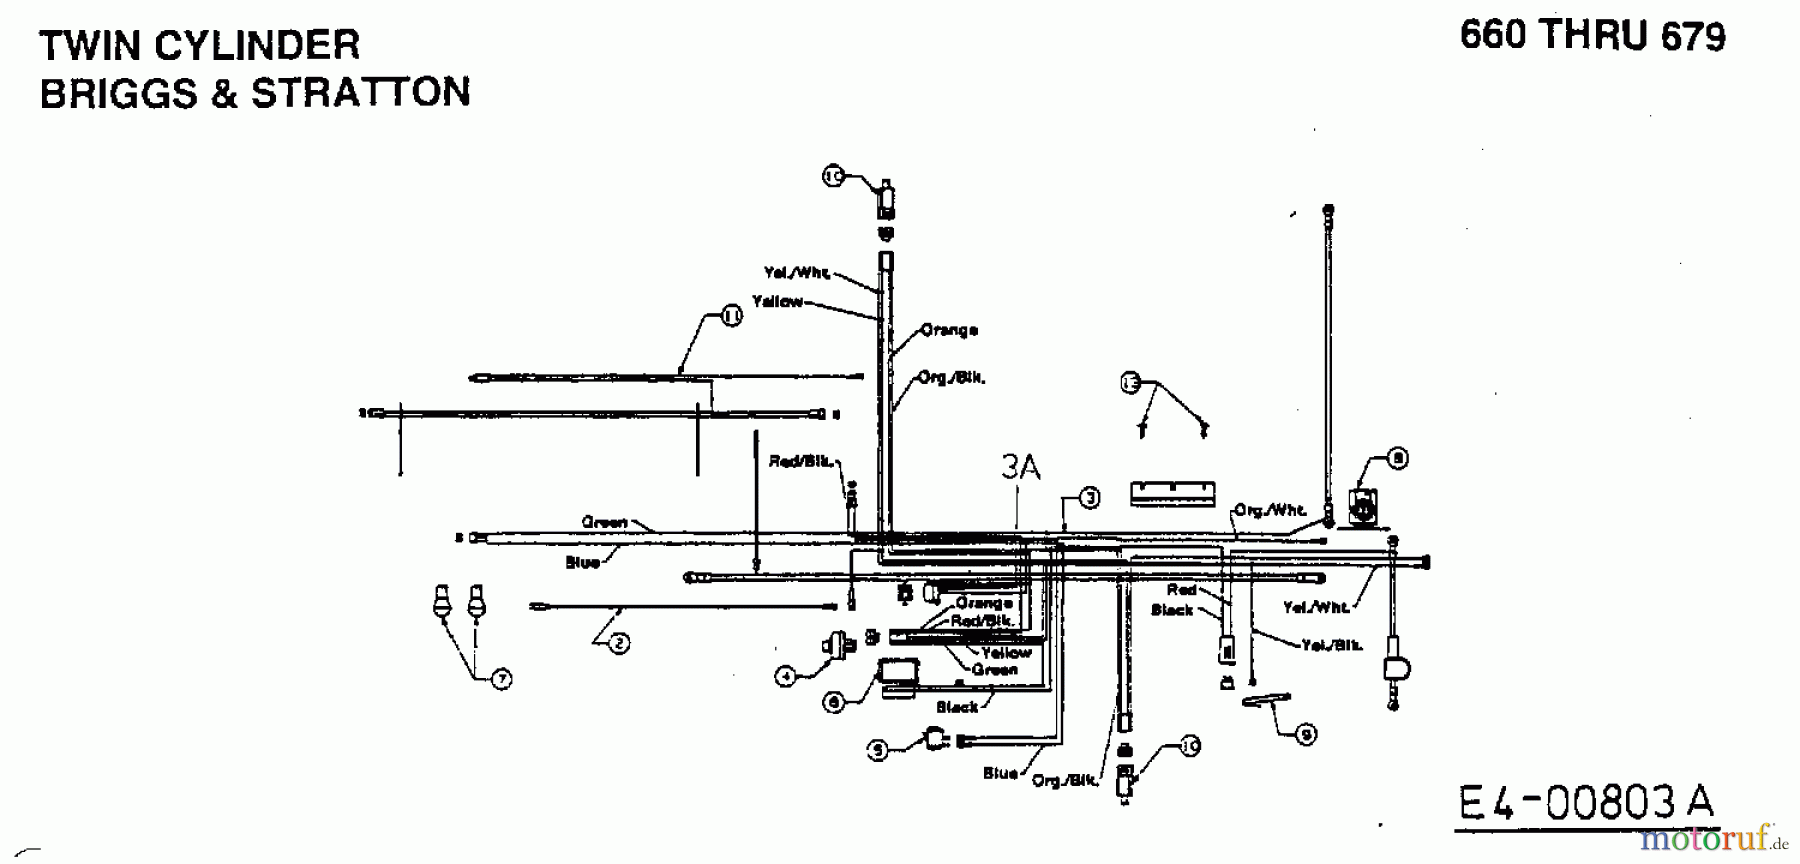  Edenparc Tracteurs de pelouse B 14596 13AM670F608  (1998) Plan électrique 2 cylindre